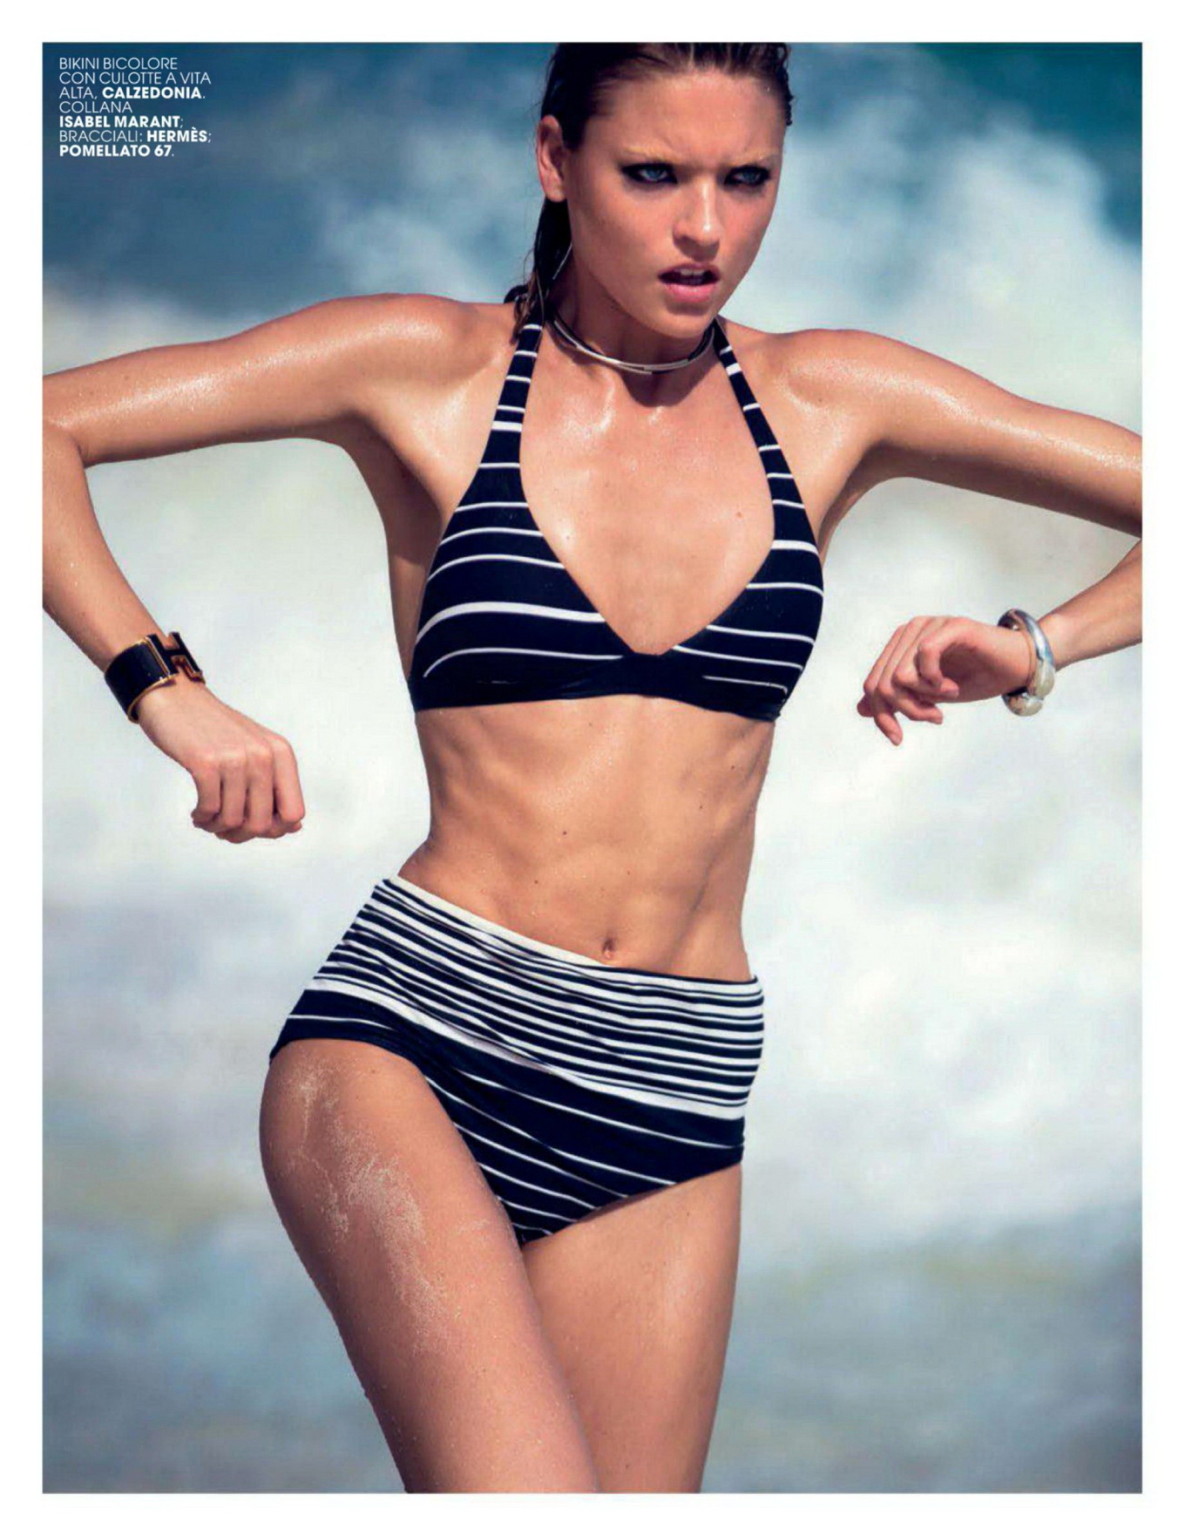 イタリアのMarie claire誌2014年6月号で巨乳を披露するマーサ・ハント
 #75192492